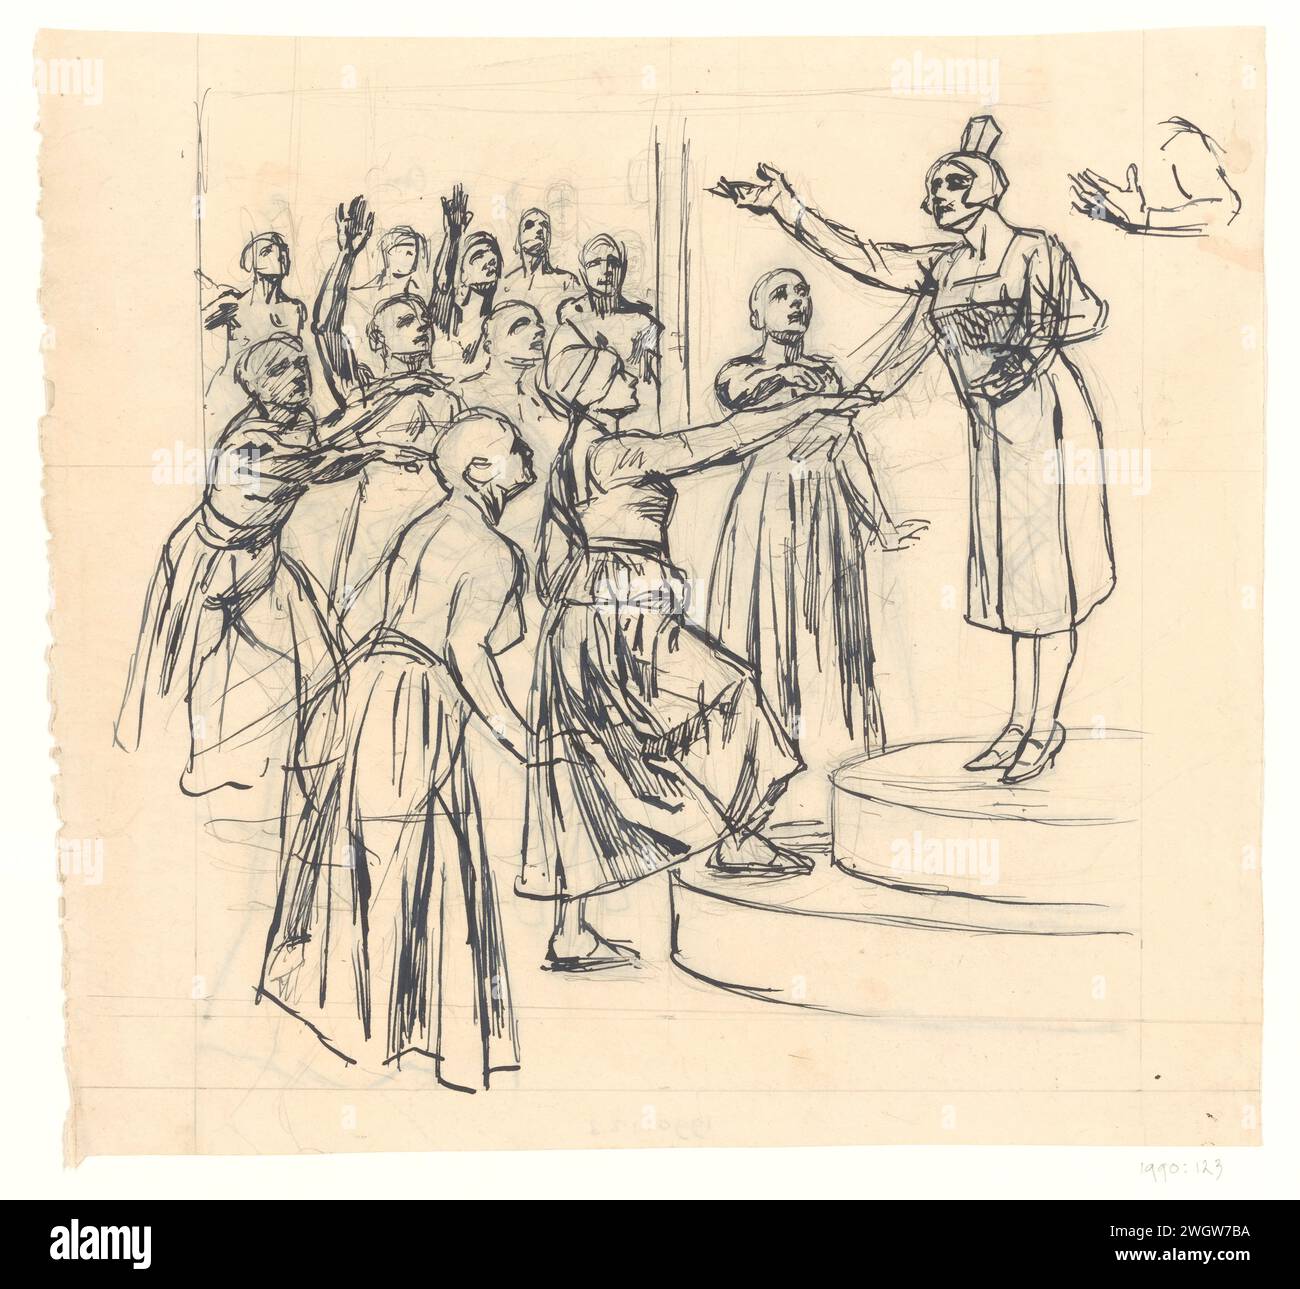 Stehende Frau auf Podest für Gruppe von Frauen mit großen Armen, Johan Braakensiek, ca. 1868 - ca. 1940 Zeichnung eines Druckes. Papier. Tinte. Bleistift politische Karikaturen und Satiren Stockfoto